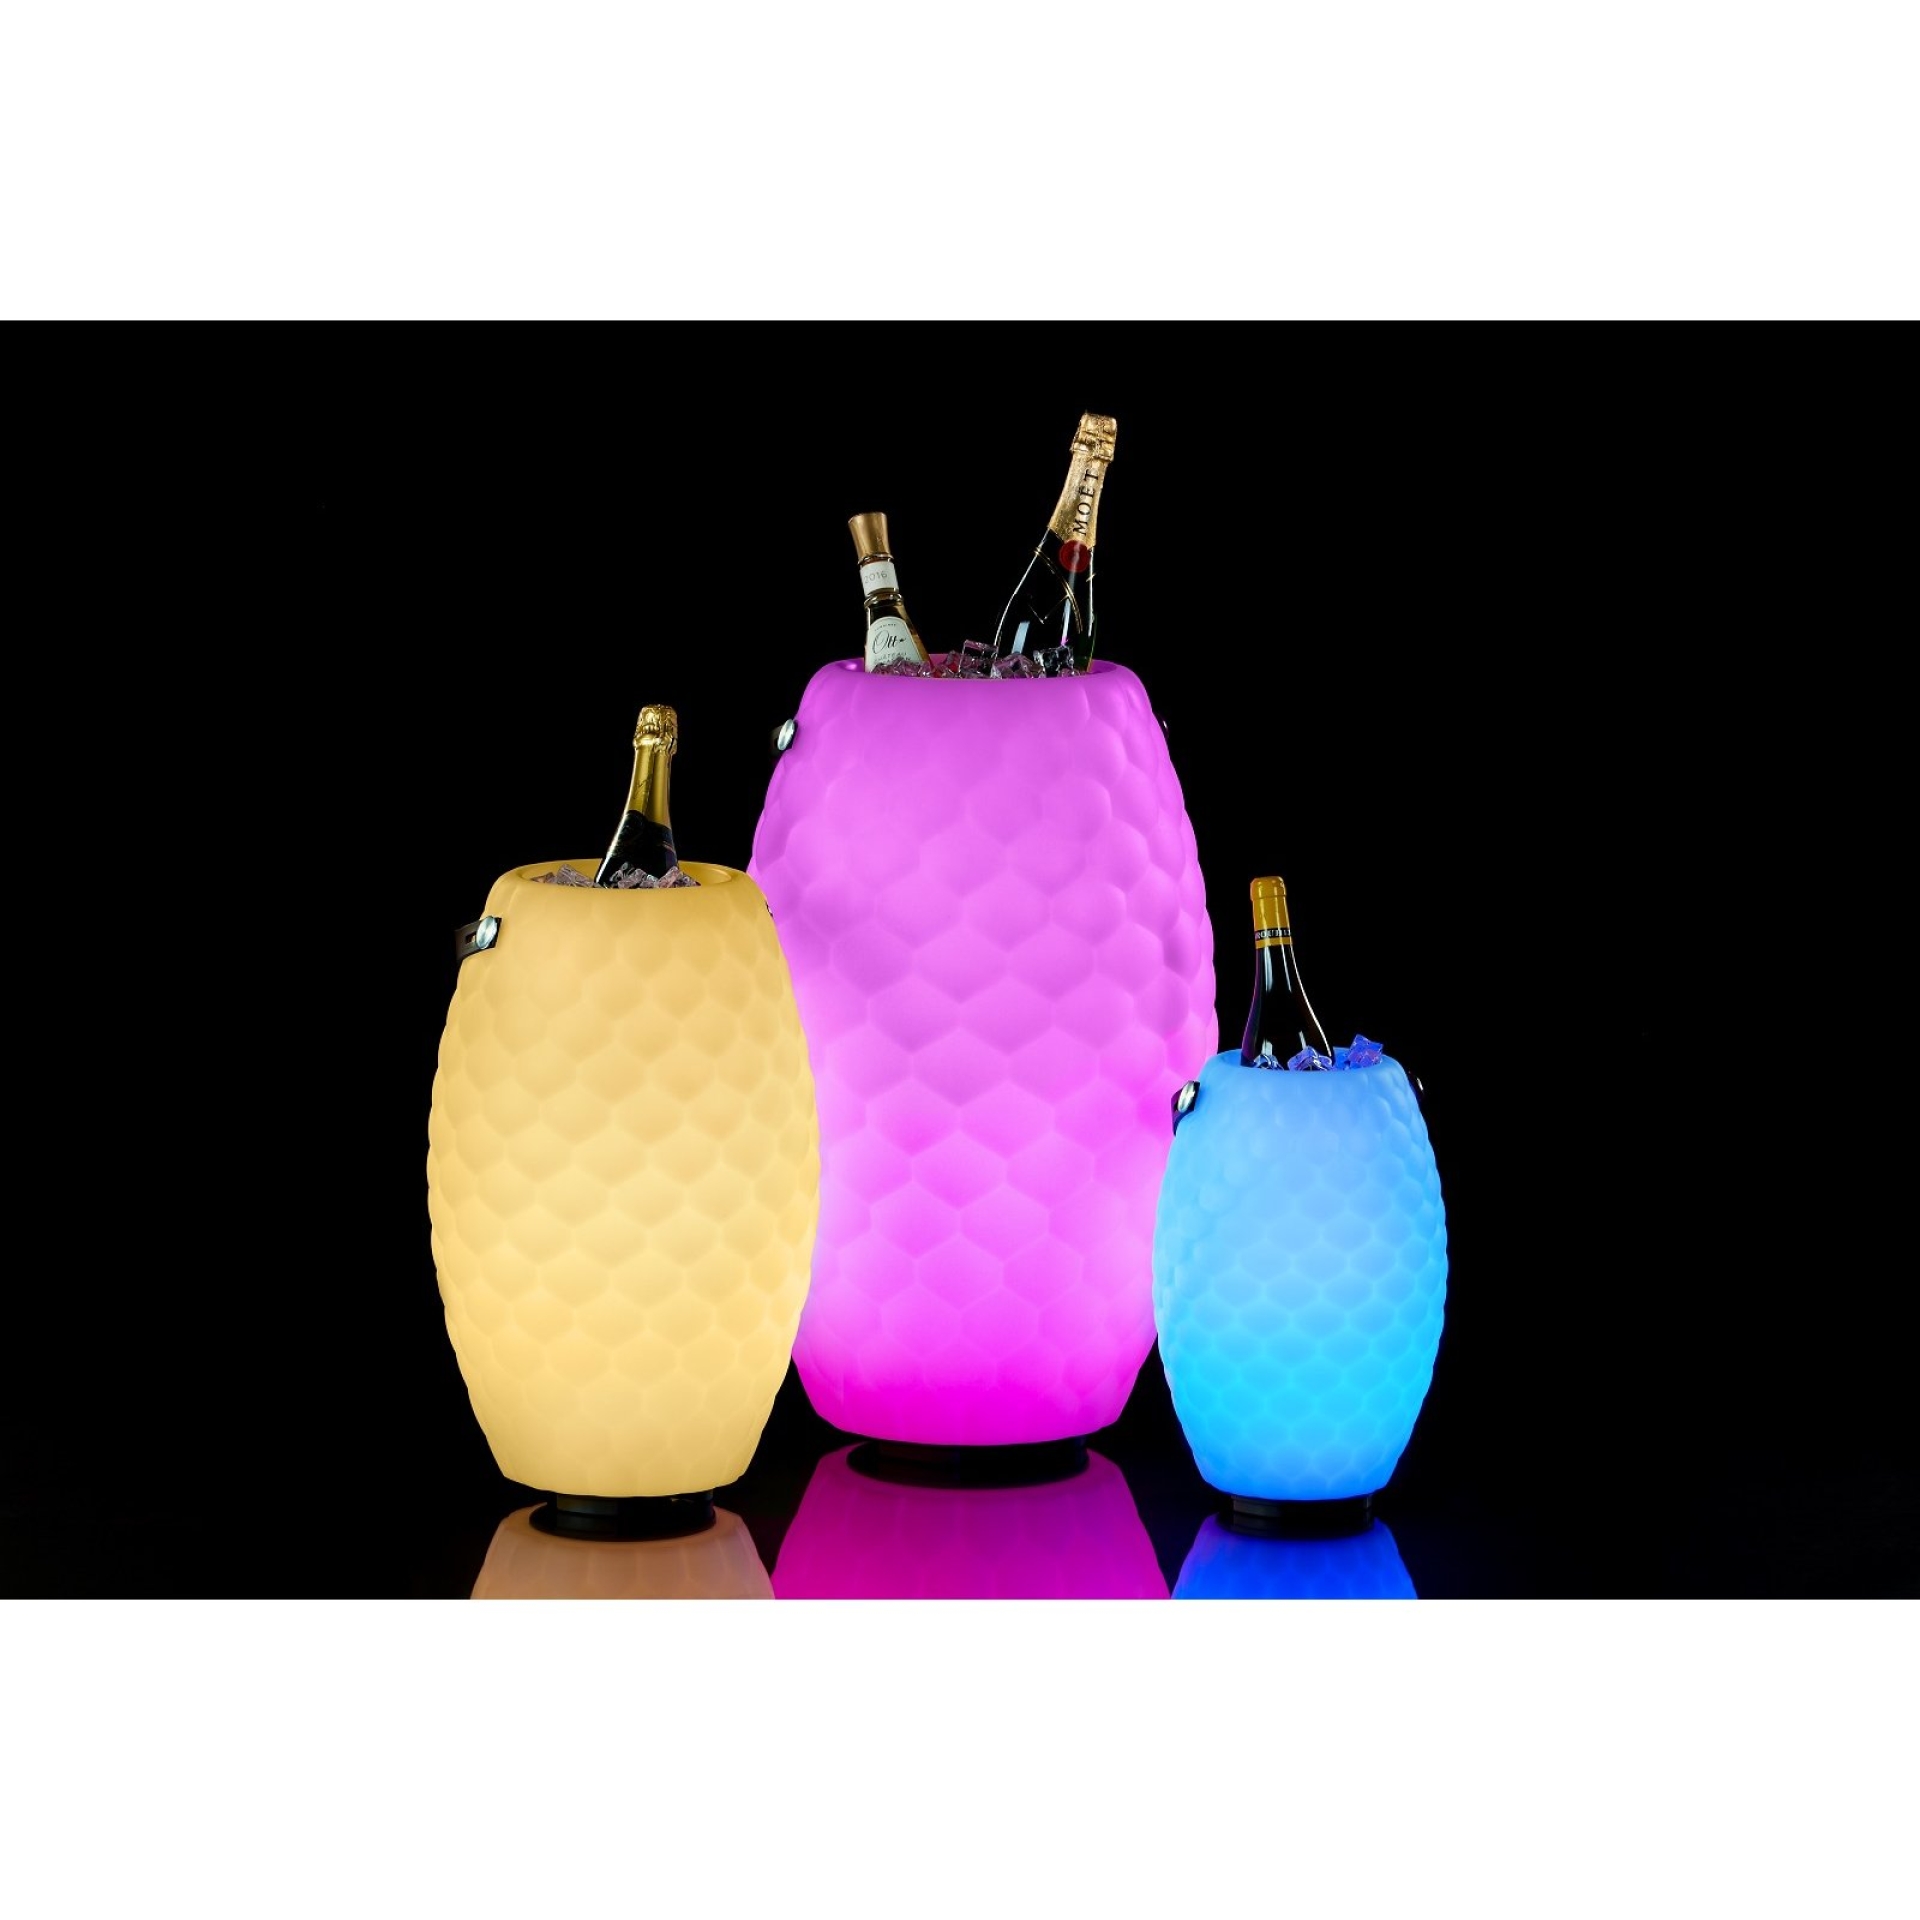 JOOULY LTD 35 - Getränkekühler mit LED Licht und Bluetooth Lautsprecher - neueste Generation